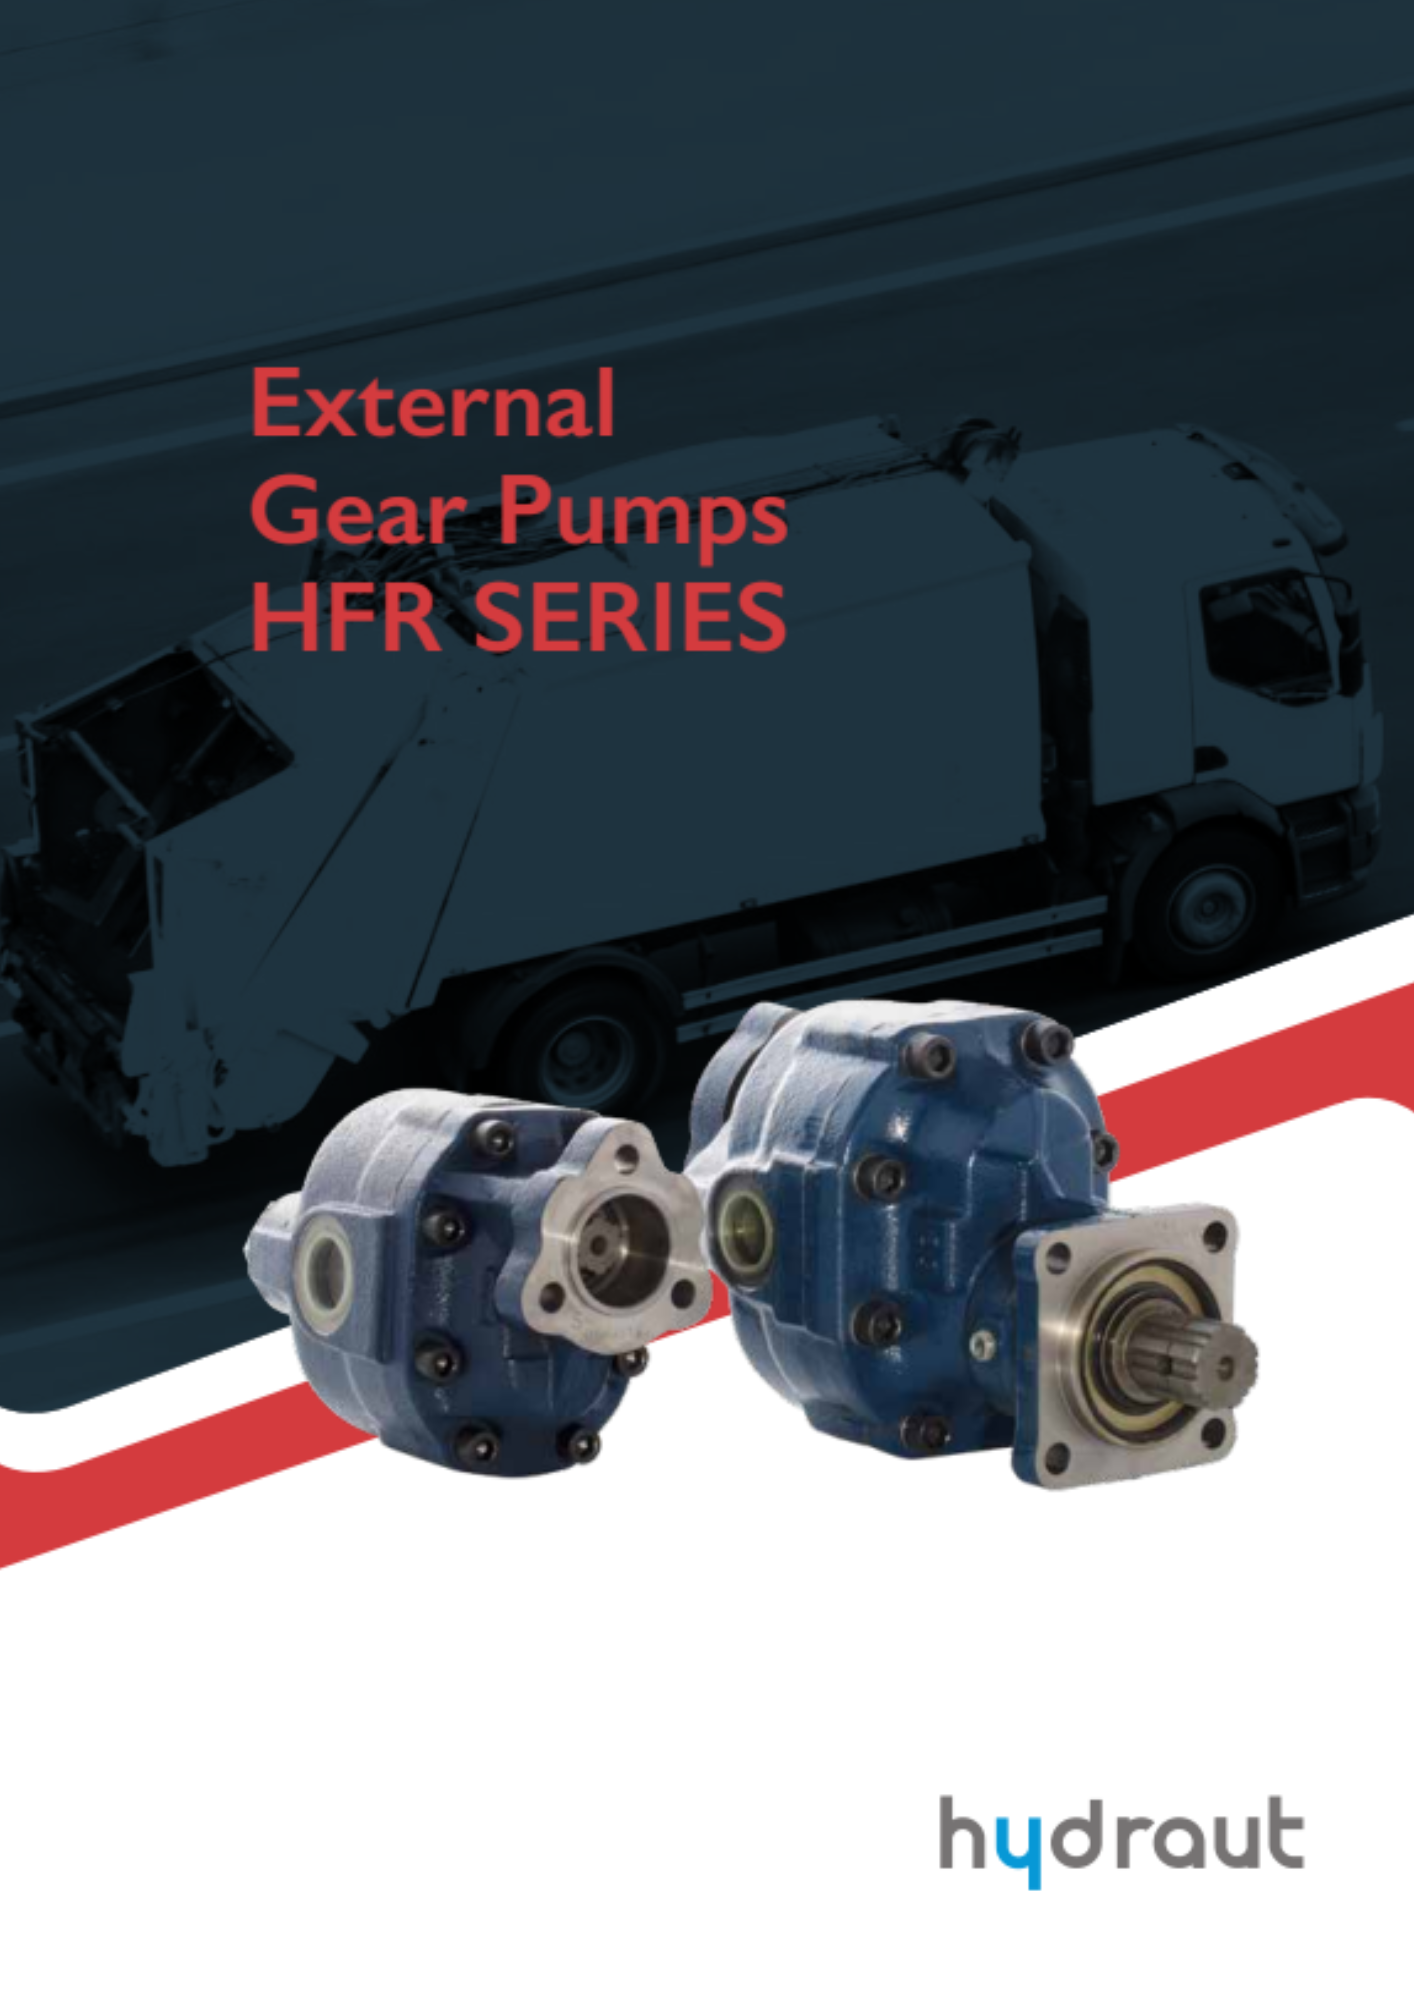 Hydraut: HFR external gear pumps